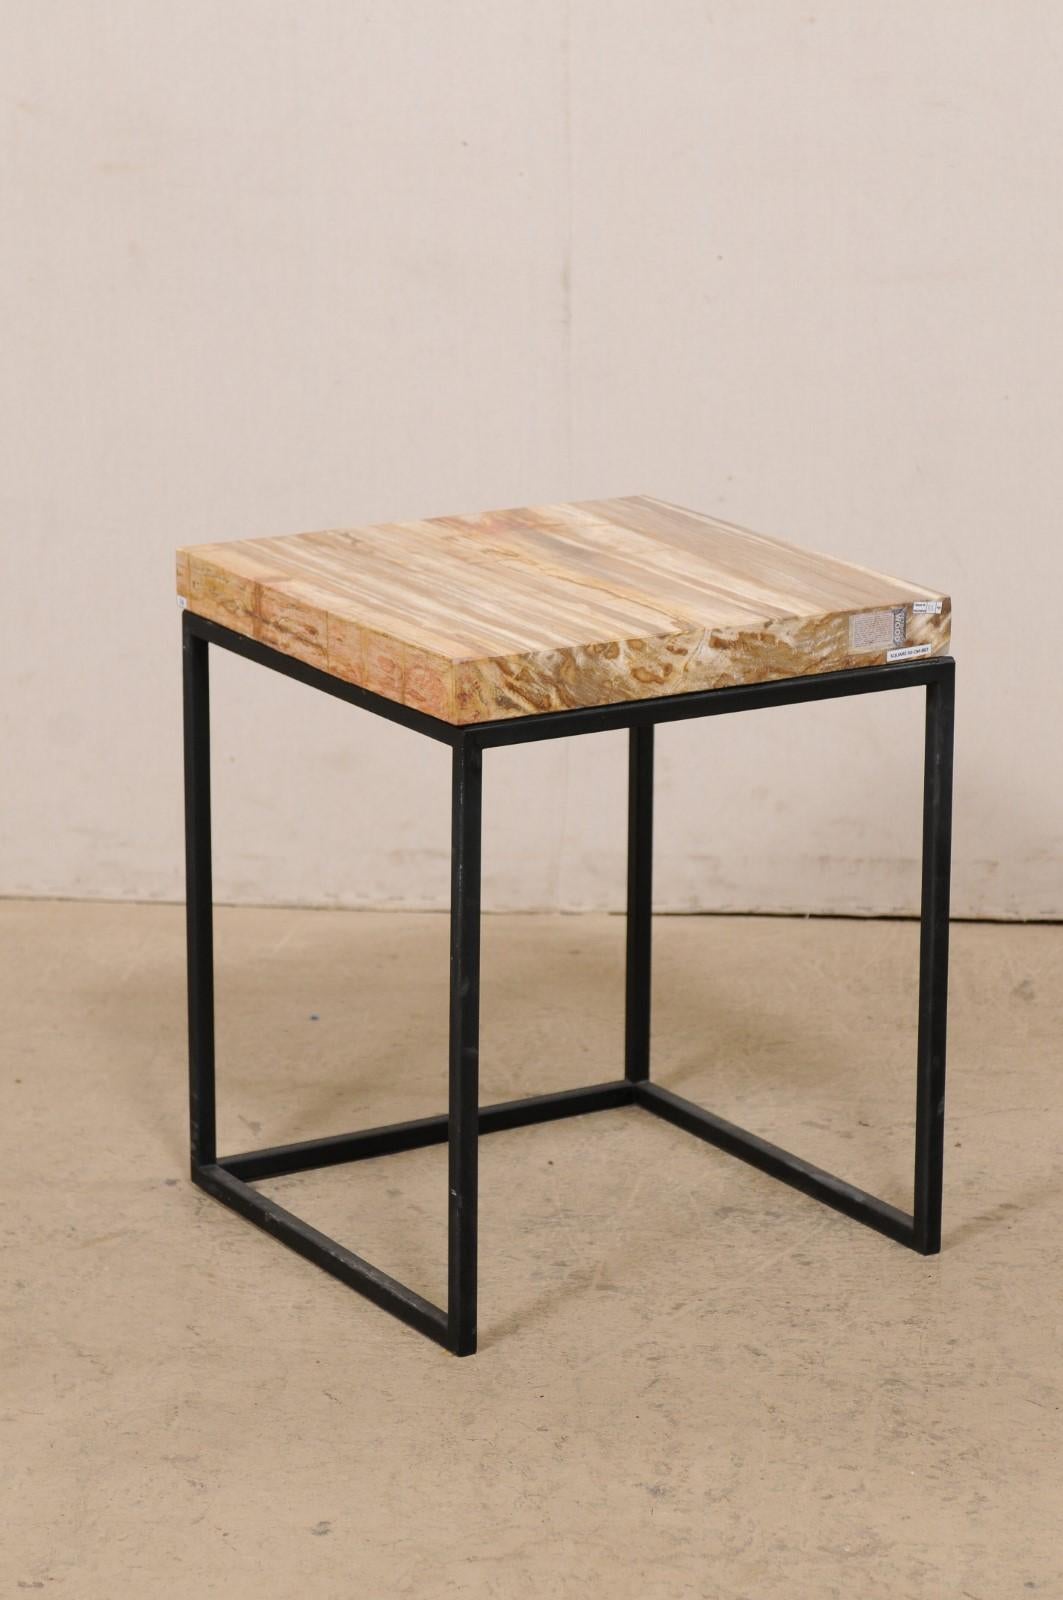 Ein Paar Beistelltische aus versteinertem Holz im modernen Stil. Dieses Tischpaar hat jeweils eine quadratische Platte aus versteinertem Holz in schönen warmen Braun- und Beigetönen. Die Platten werden von einem speziell angefertigten schwarzen